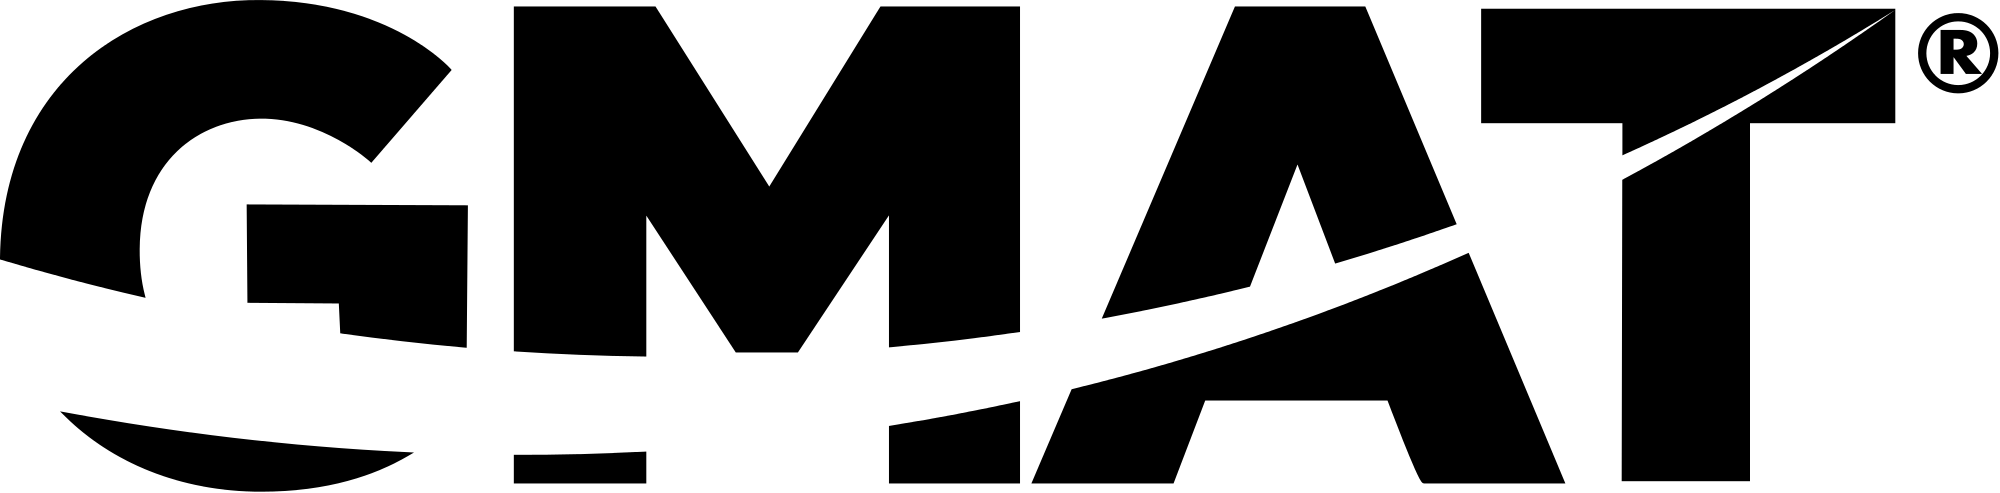 GMAT_Logo